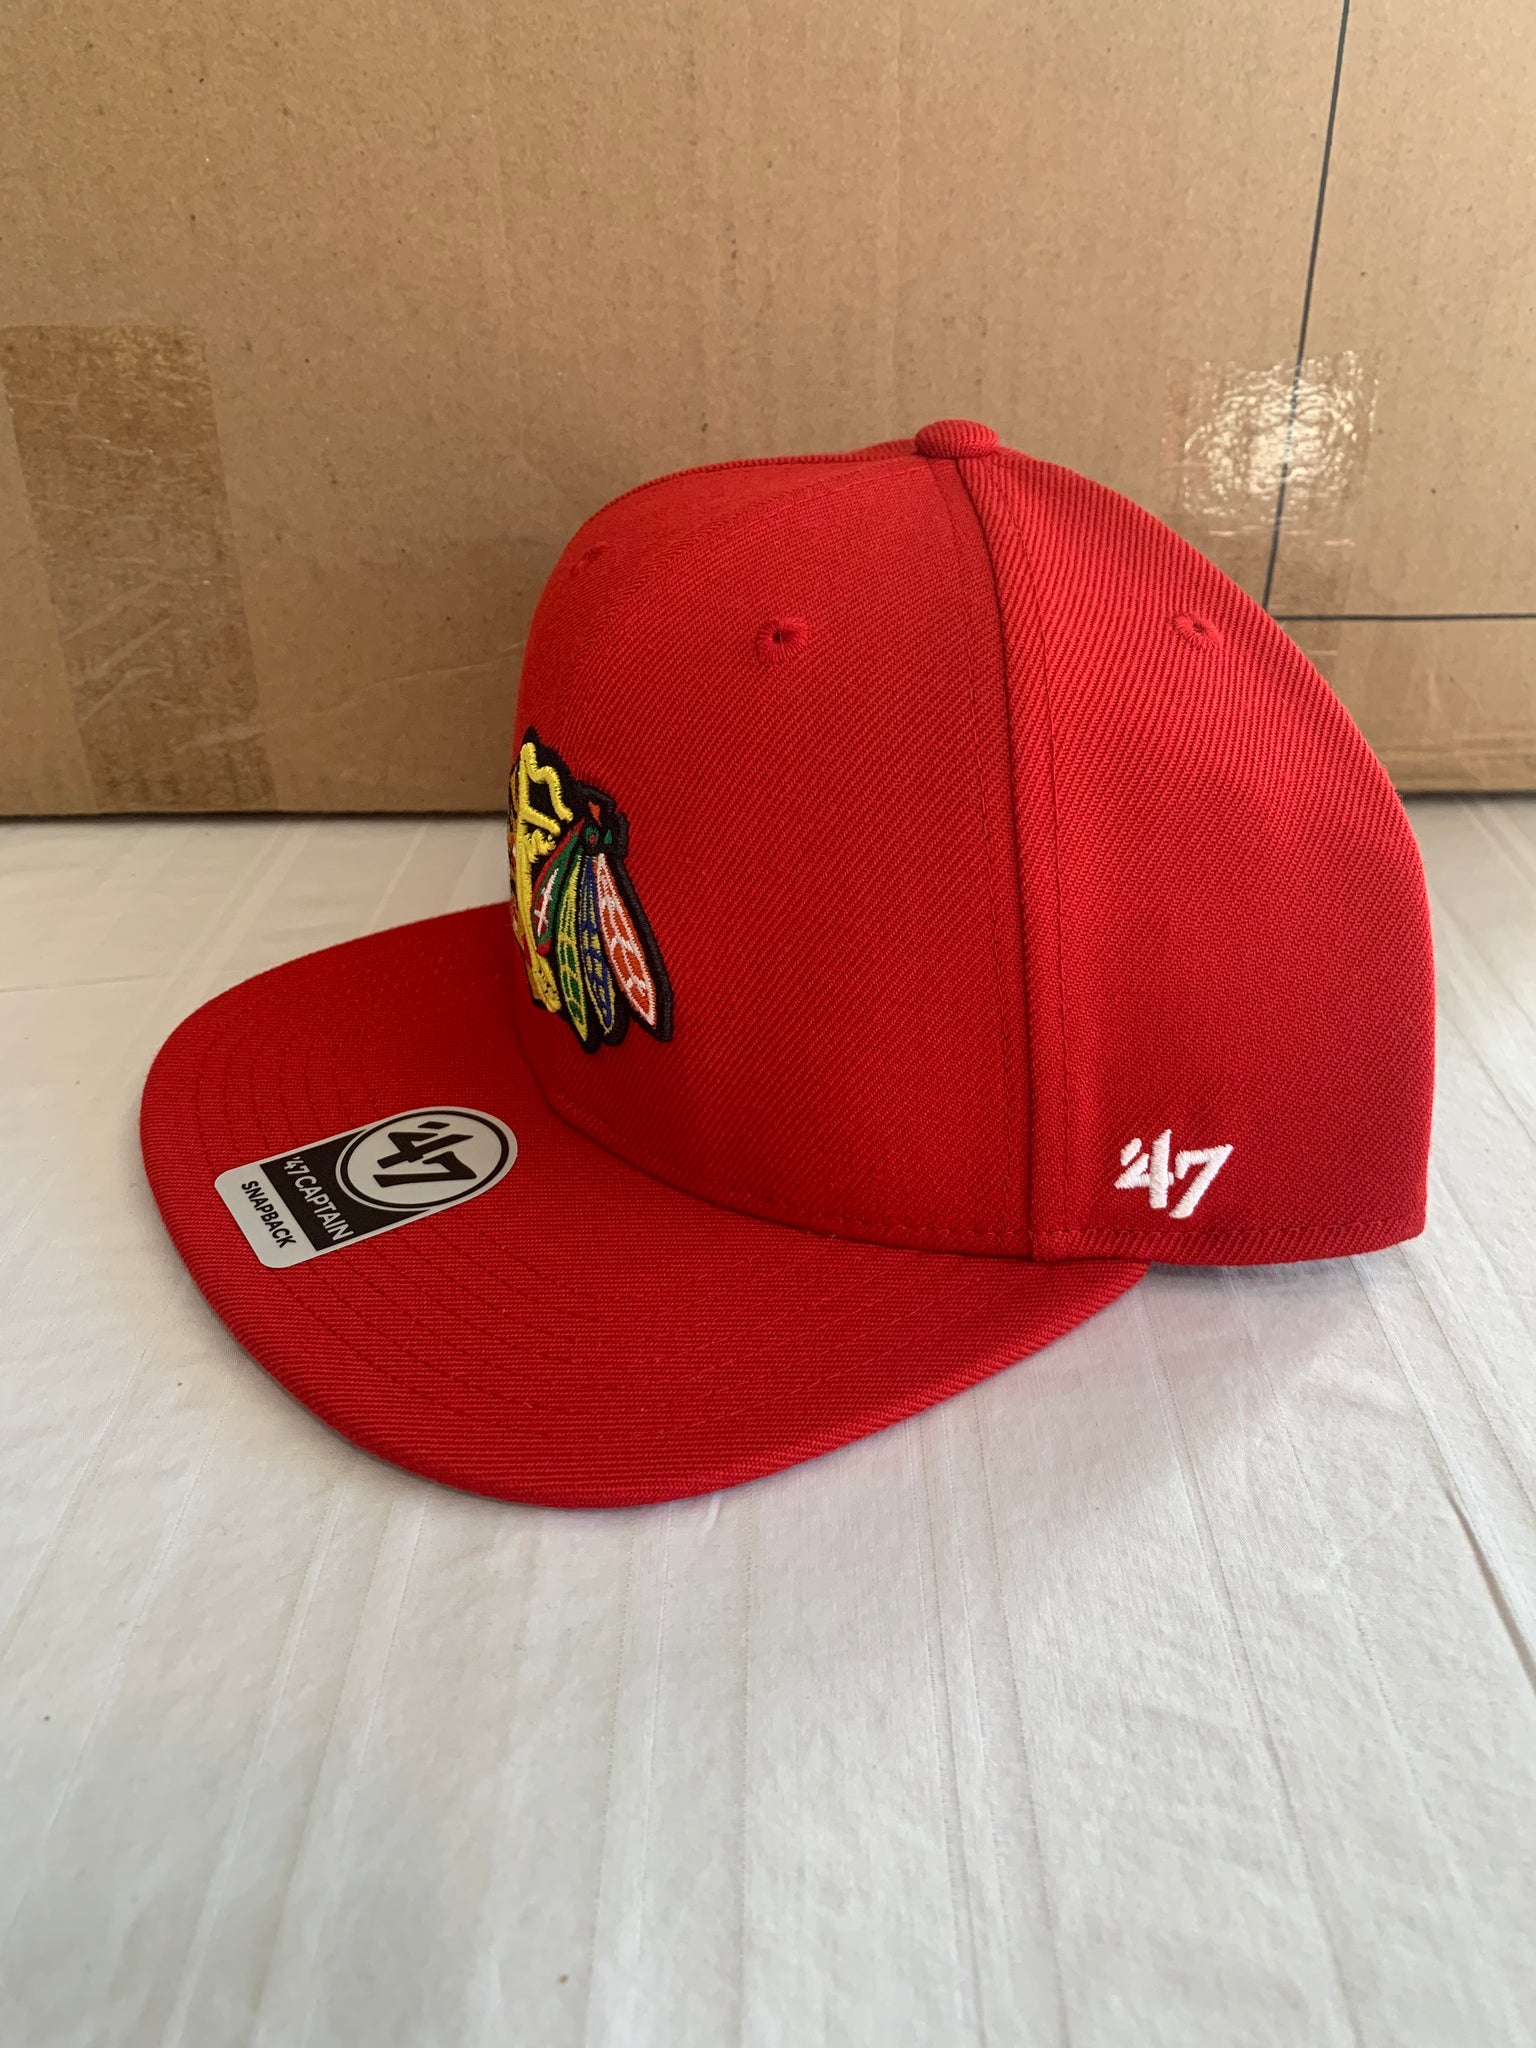 Chicago Blackhawks 47 Brand NHL SnapBack Hat